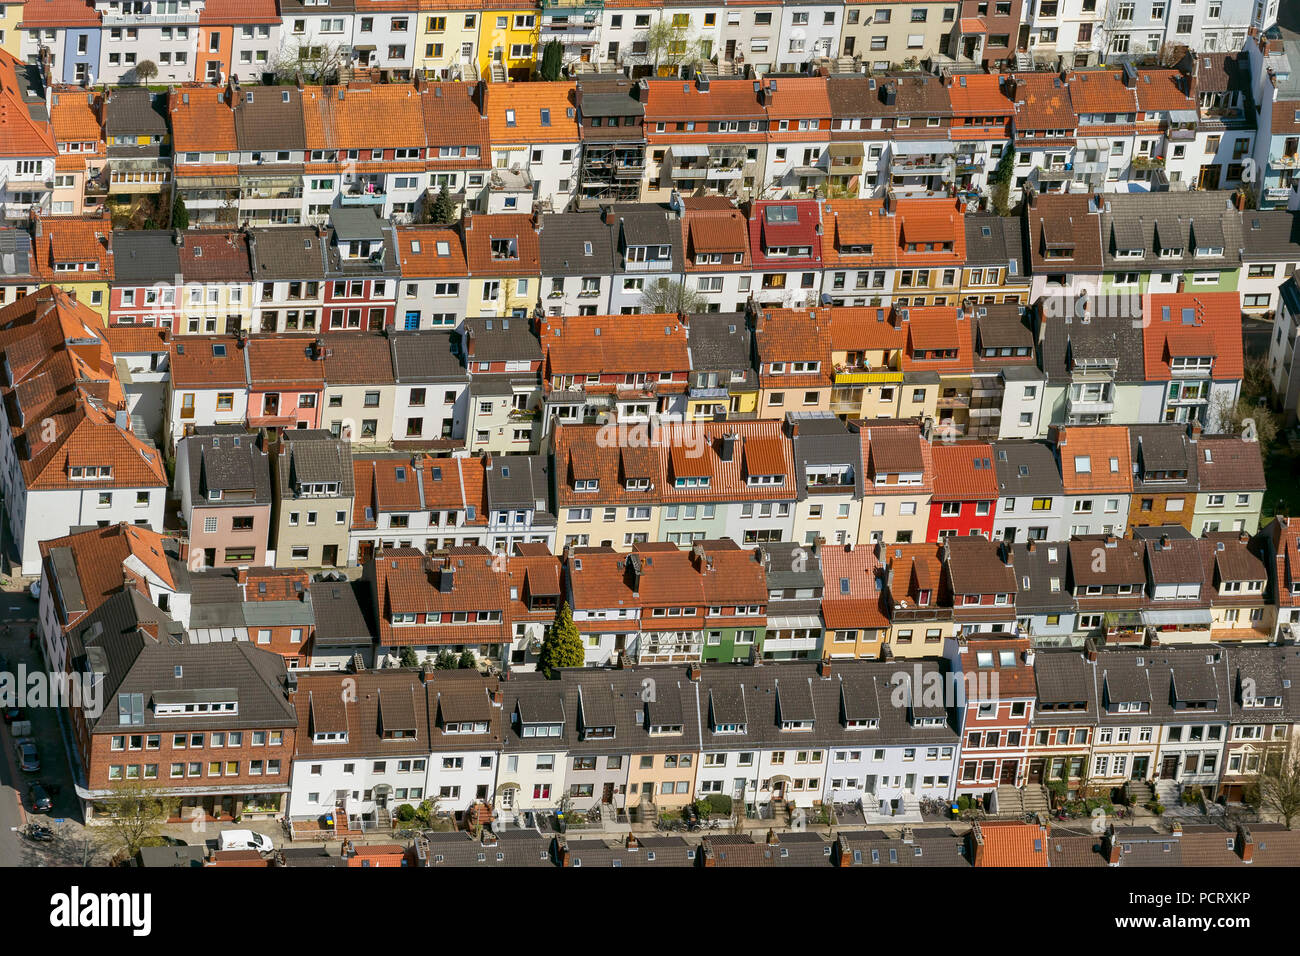 Rangée de maisons du quartier Findorff, louer maisons, appartements, penthouses, toits de tuiles rouges, vue aérienne, photos aériennes de Brême Banque D'Images